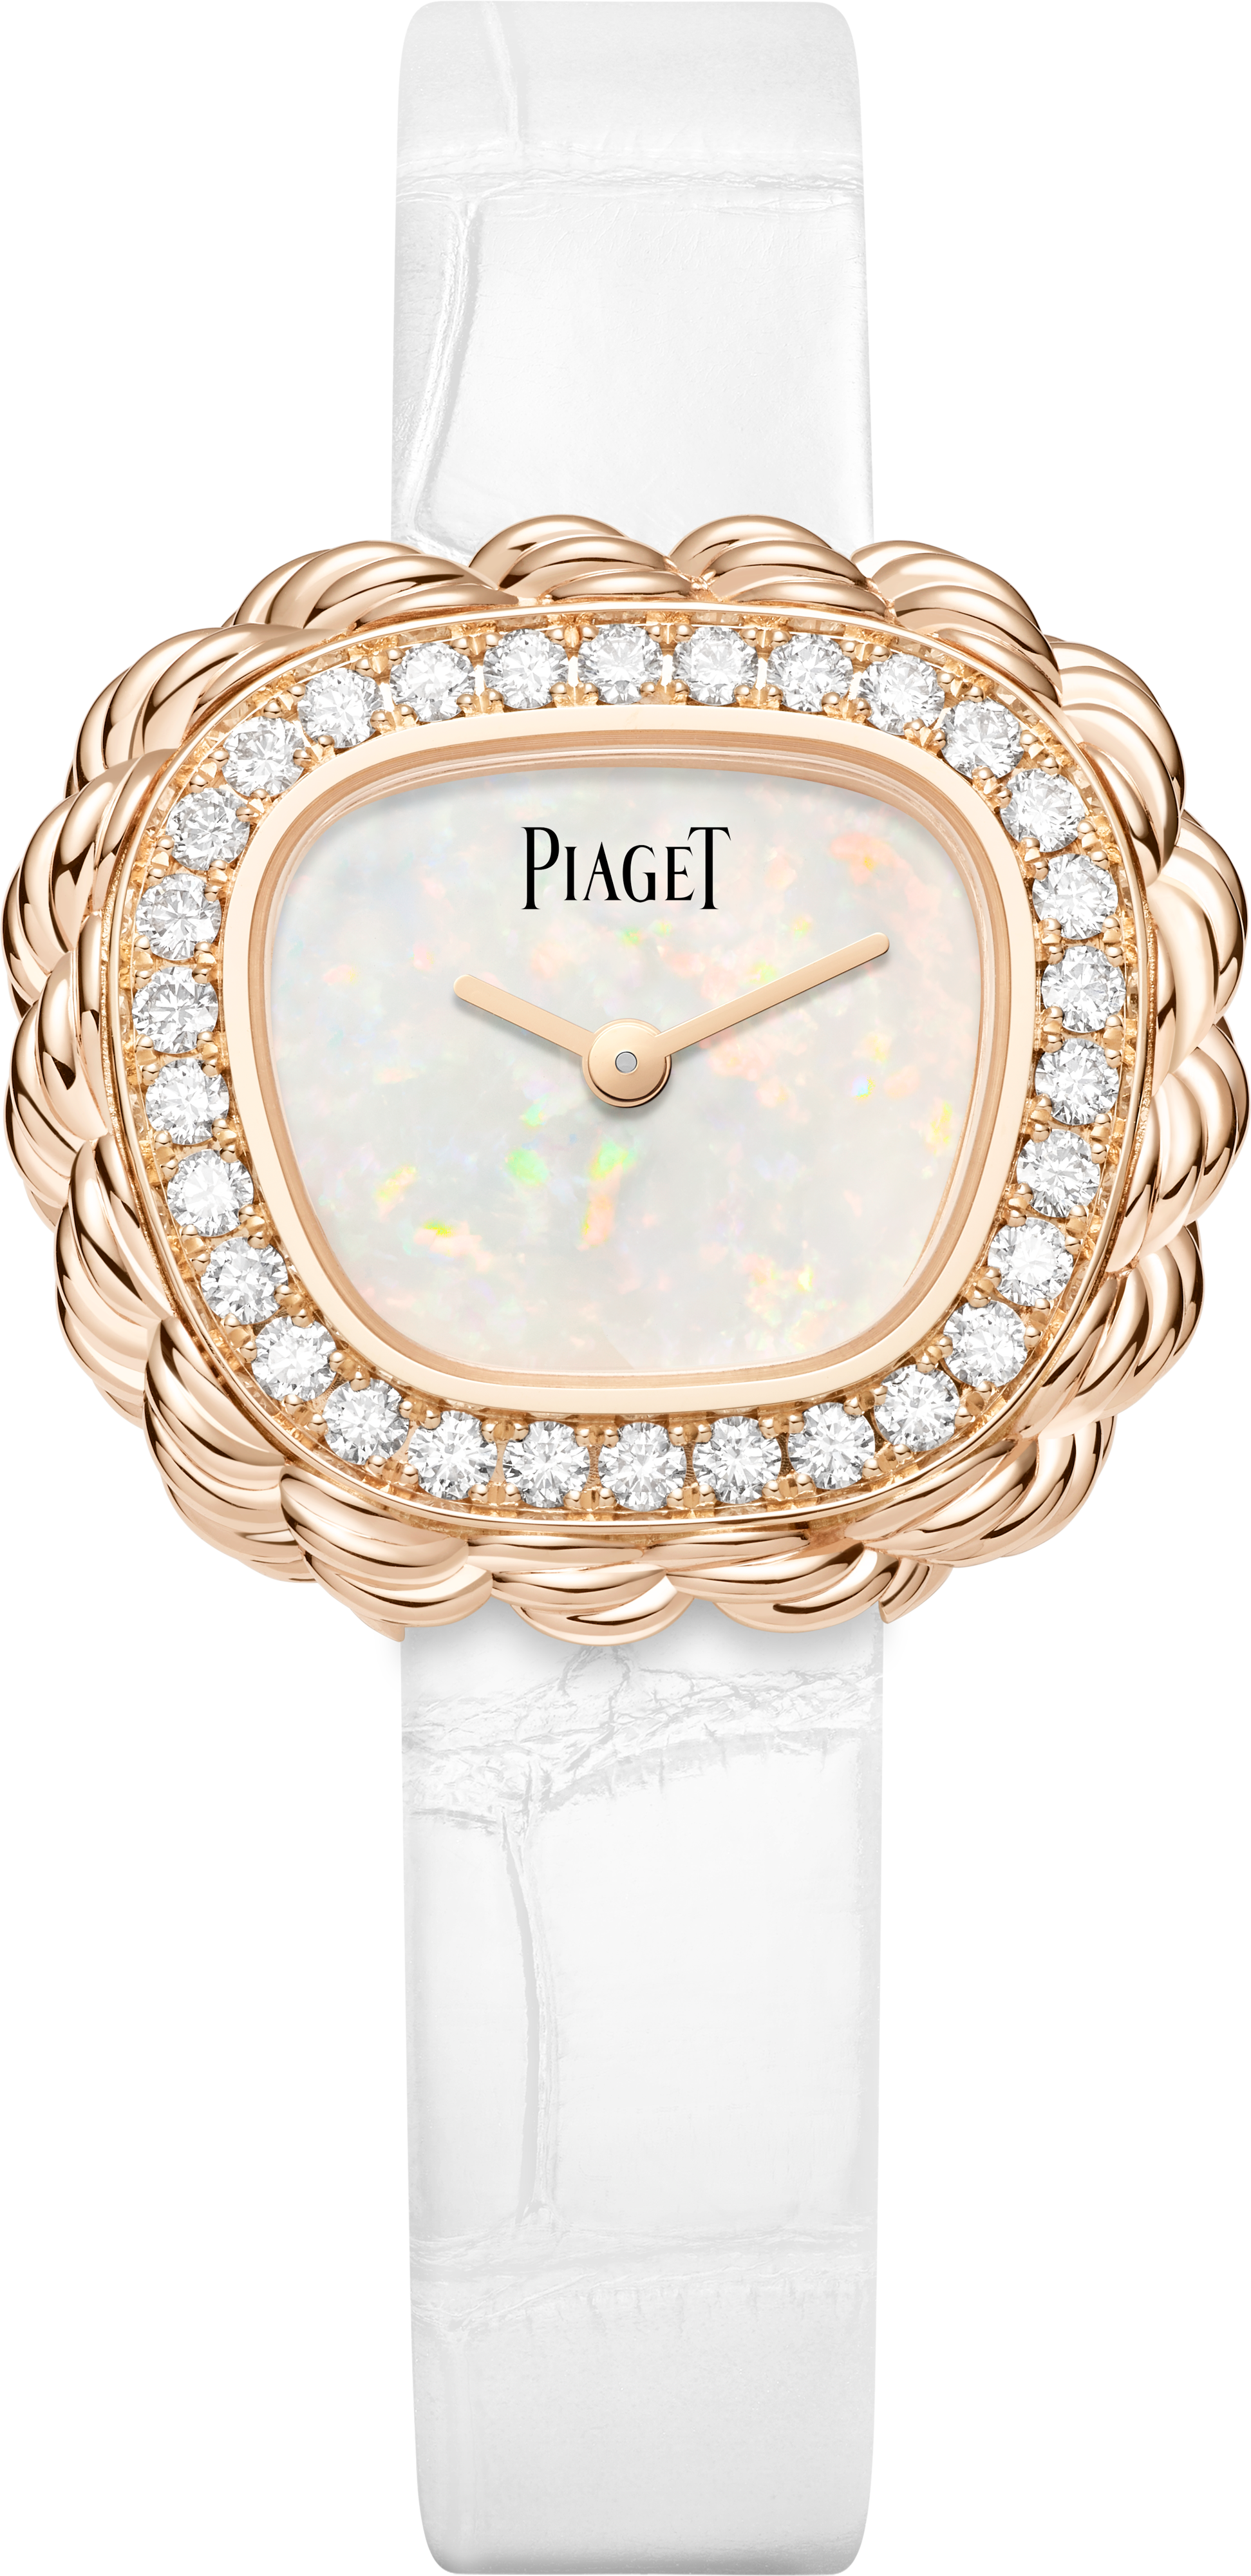 EXTRALEGANZA: el arte de los relojes joya de Piaget